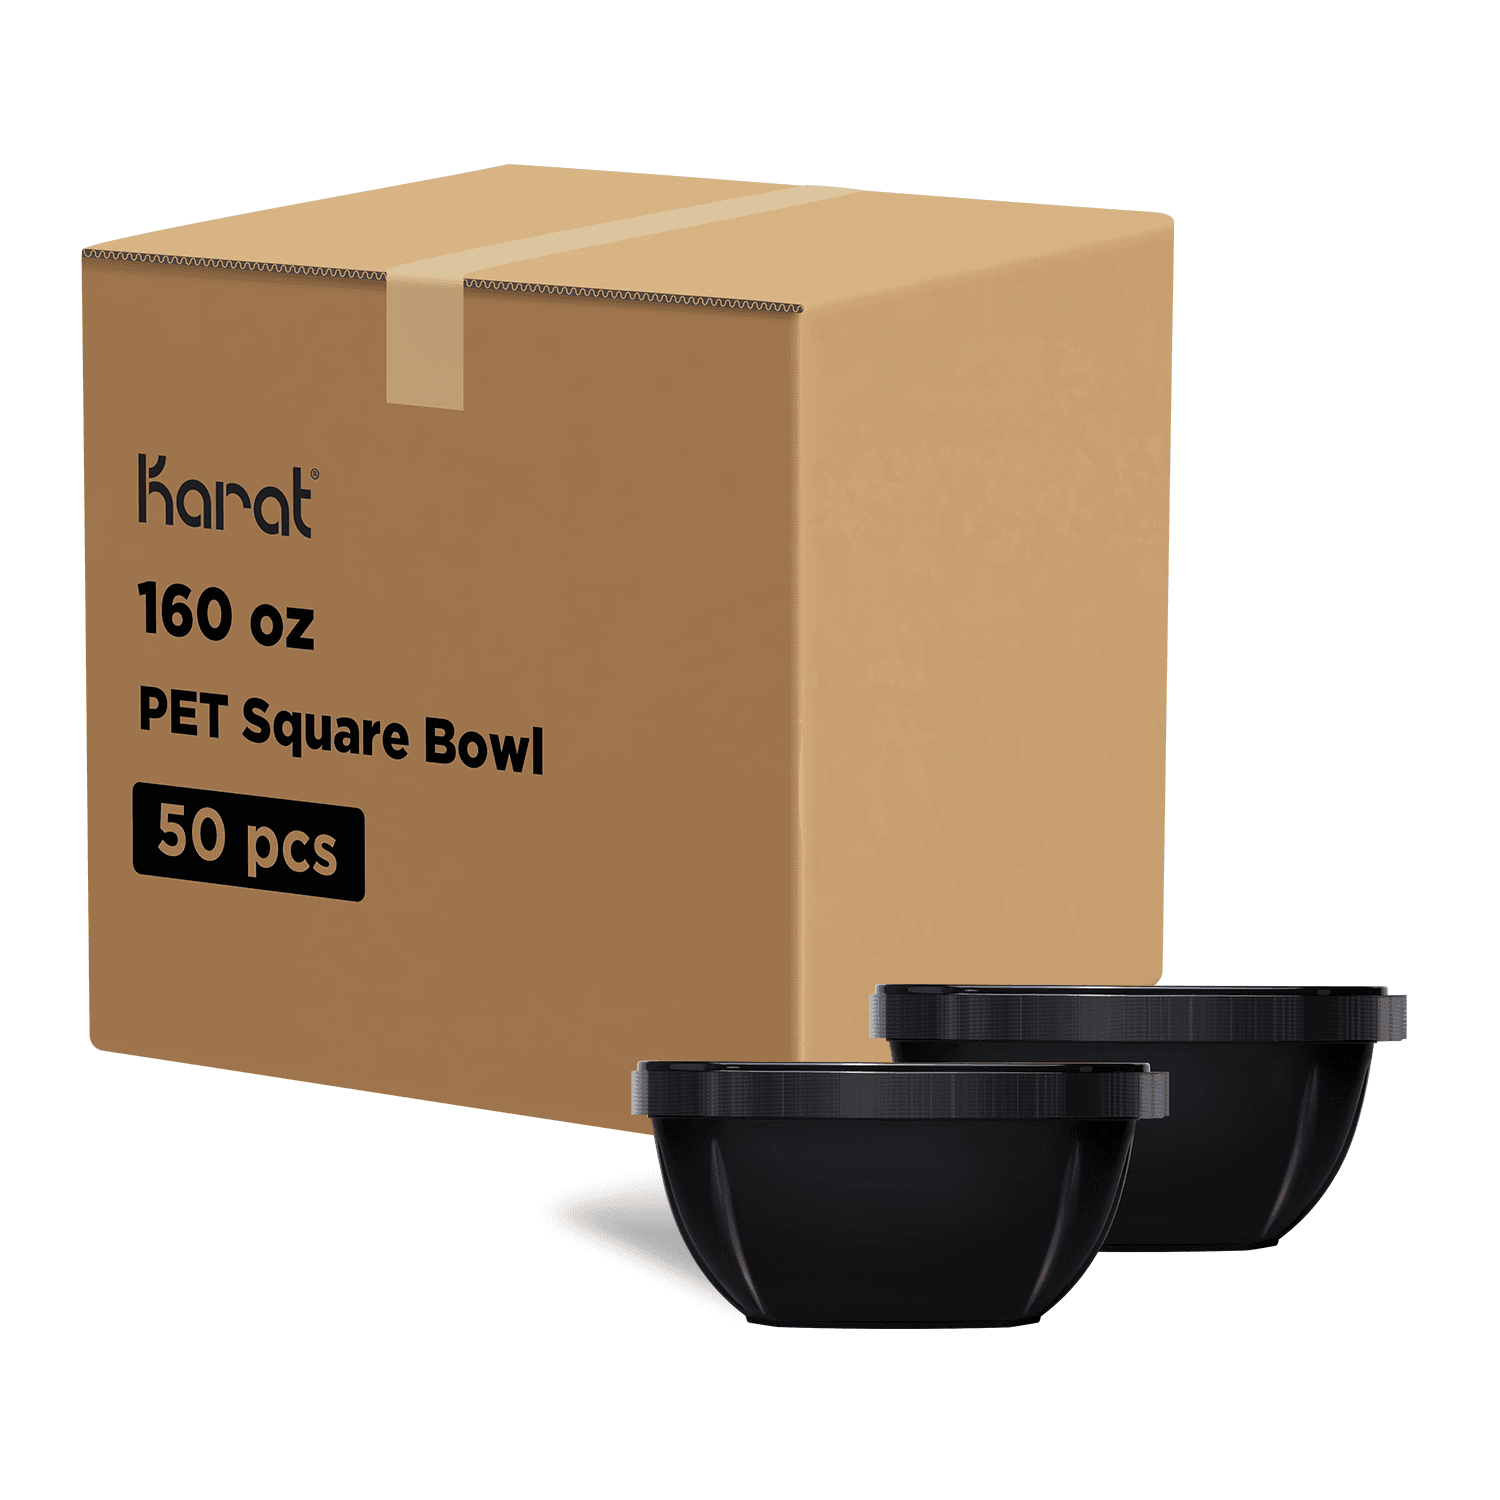 Karat 160 oz PET Square Bowl, Black - 50 pcs